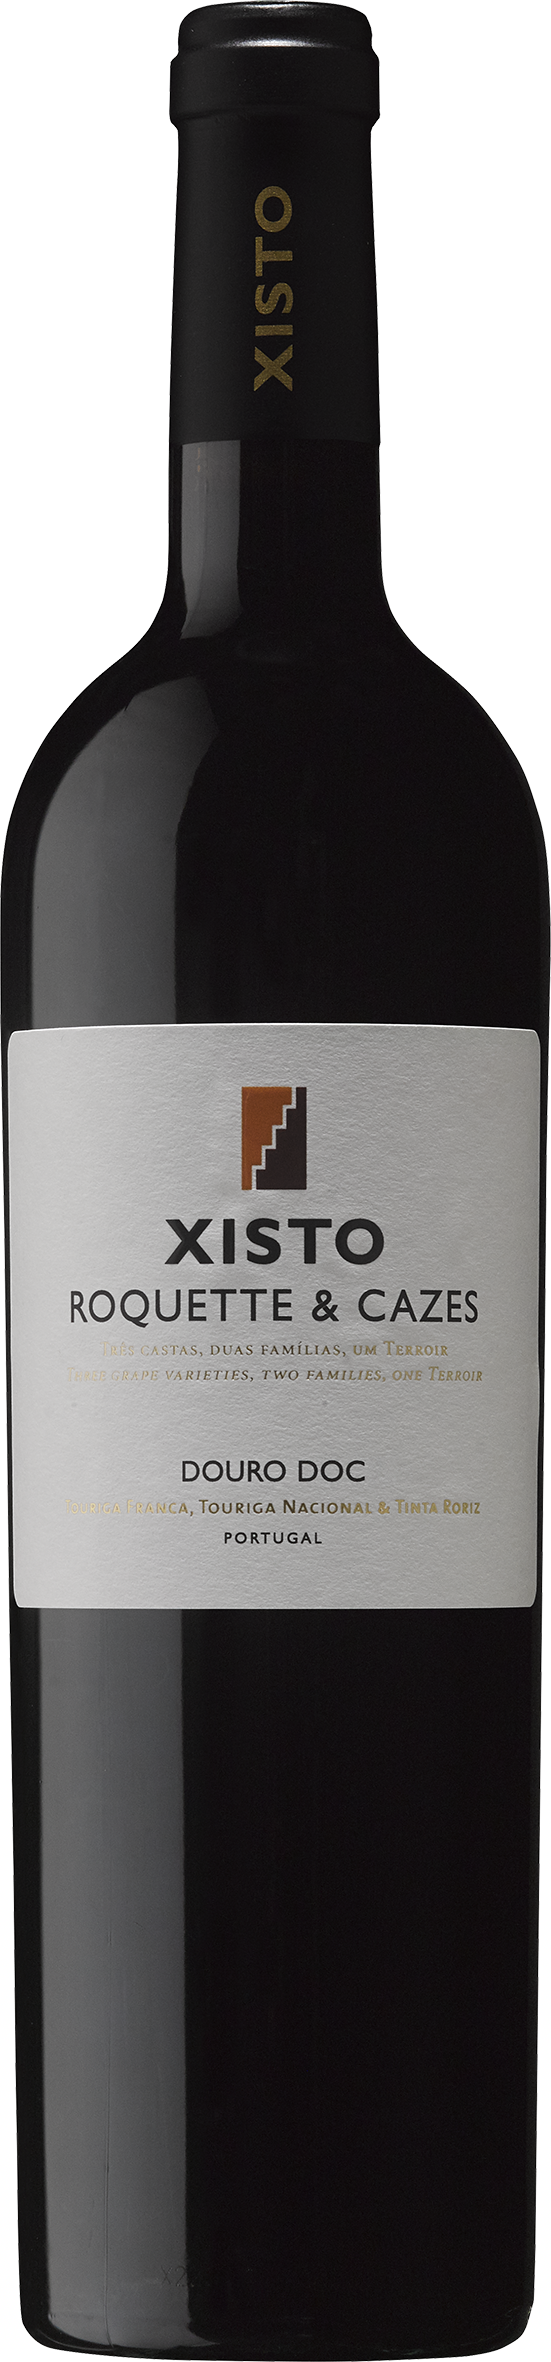 Roquette & Cazes Xisto Tinto 2019